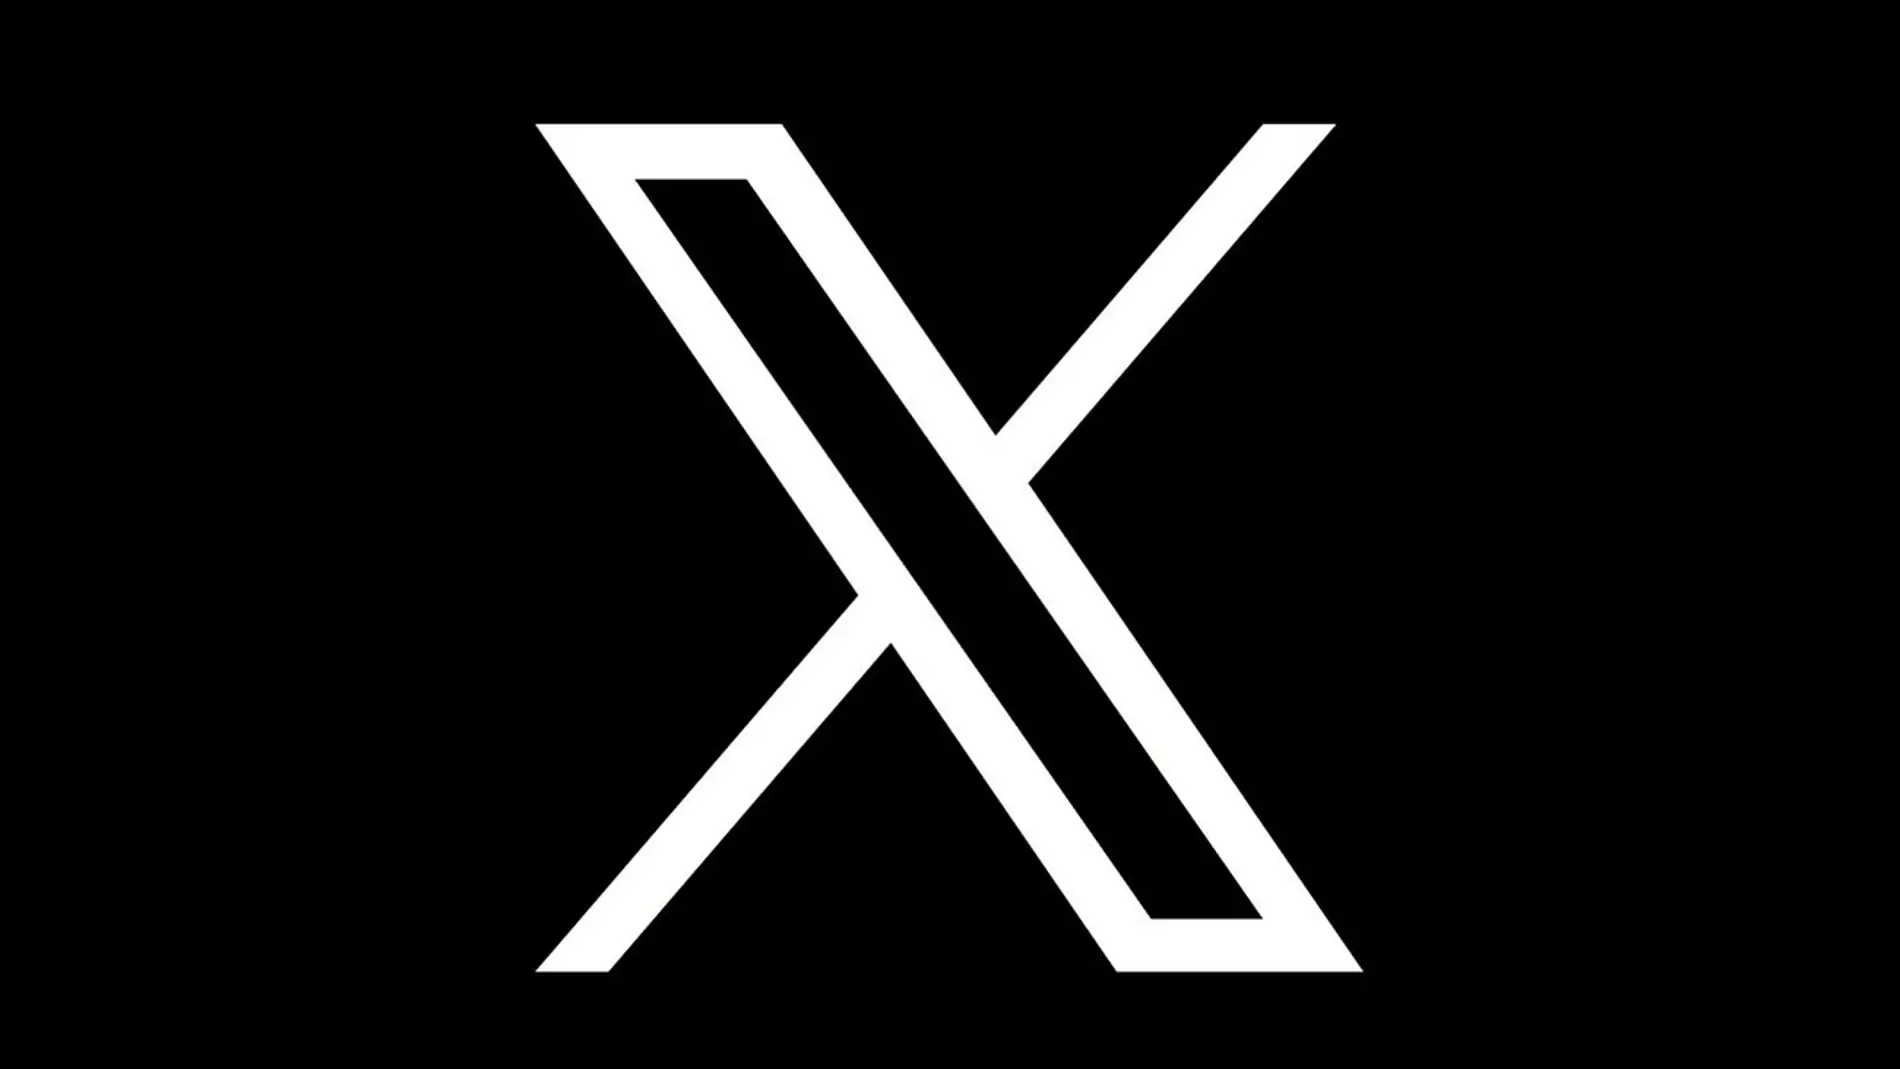 El nuevo logotipo de Twitter, ahora llamada X